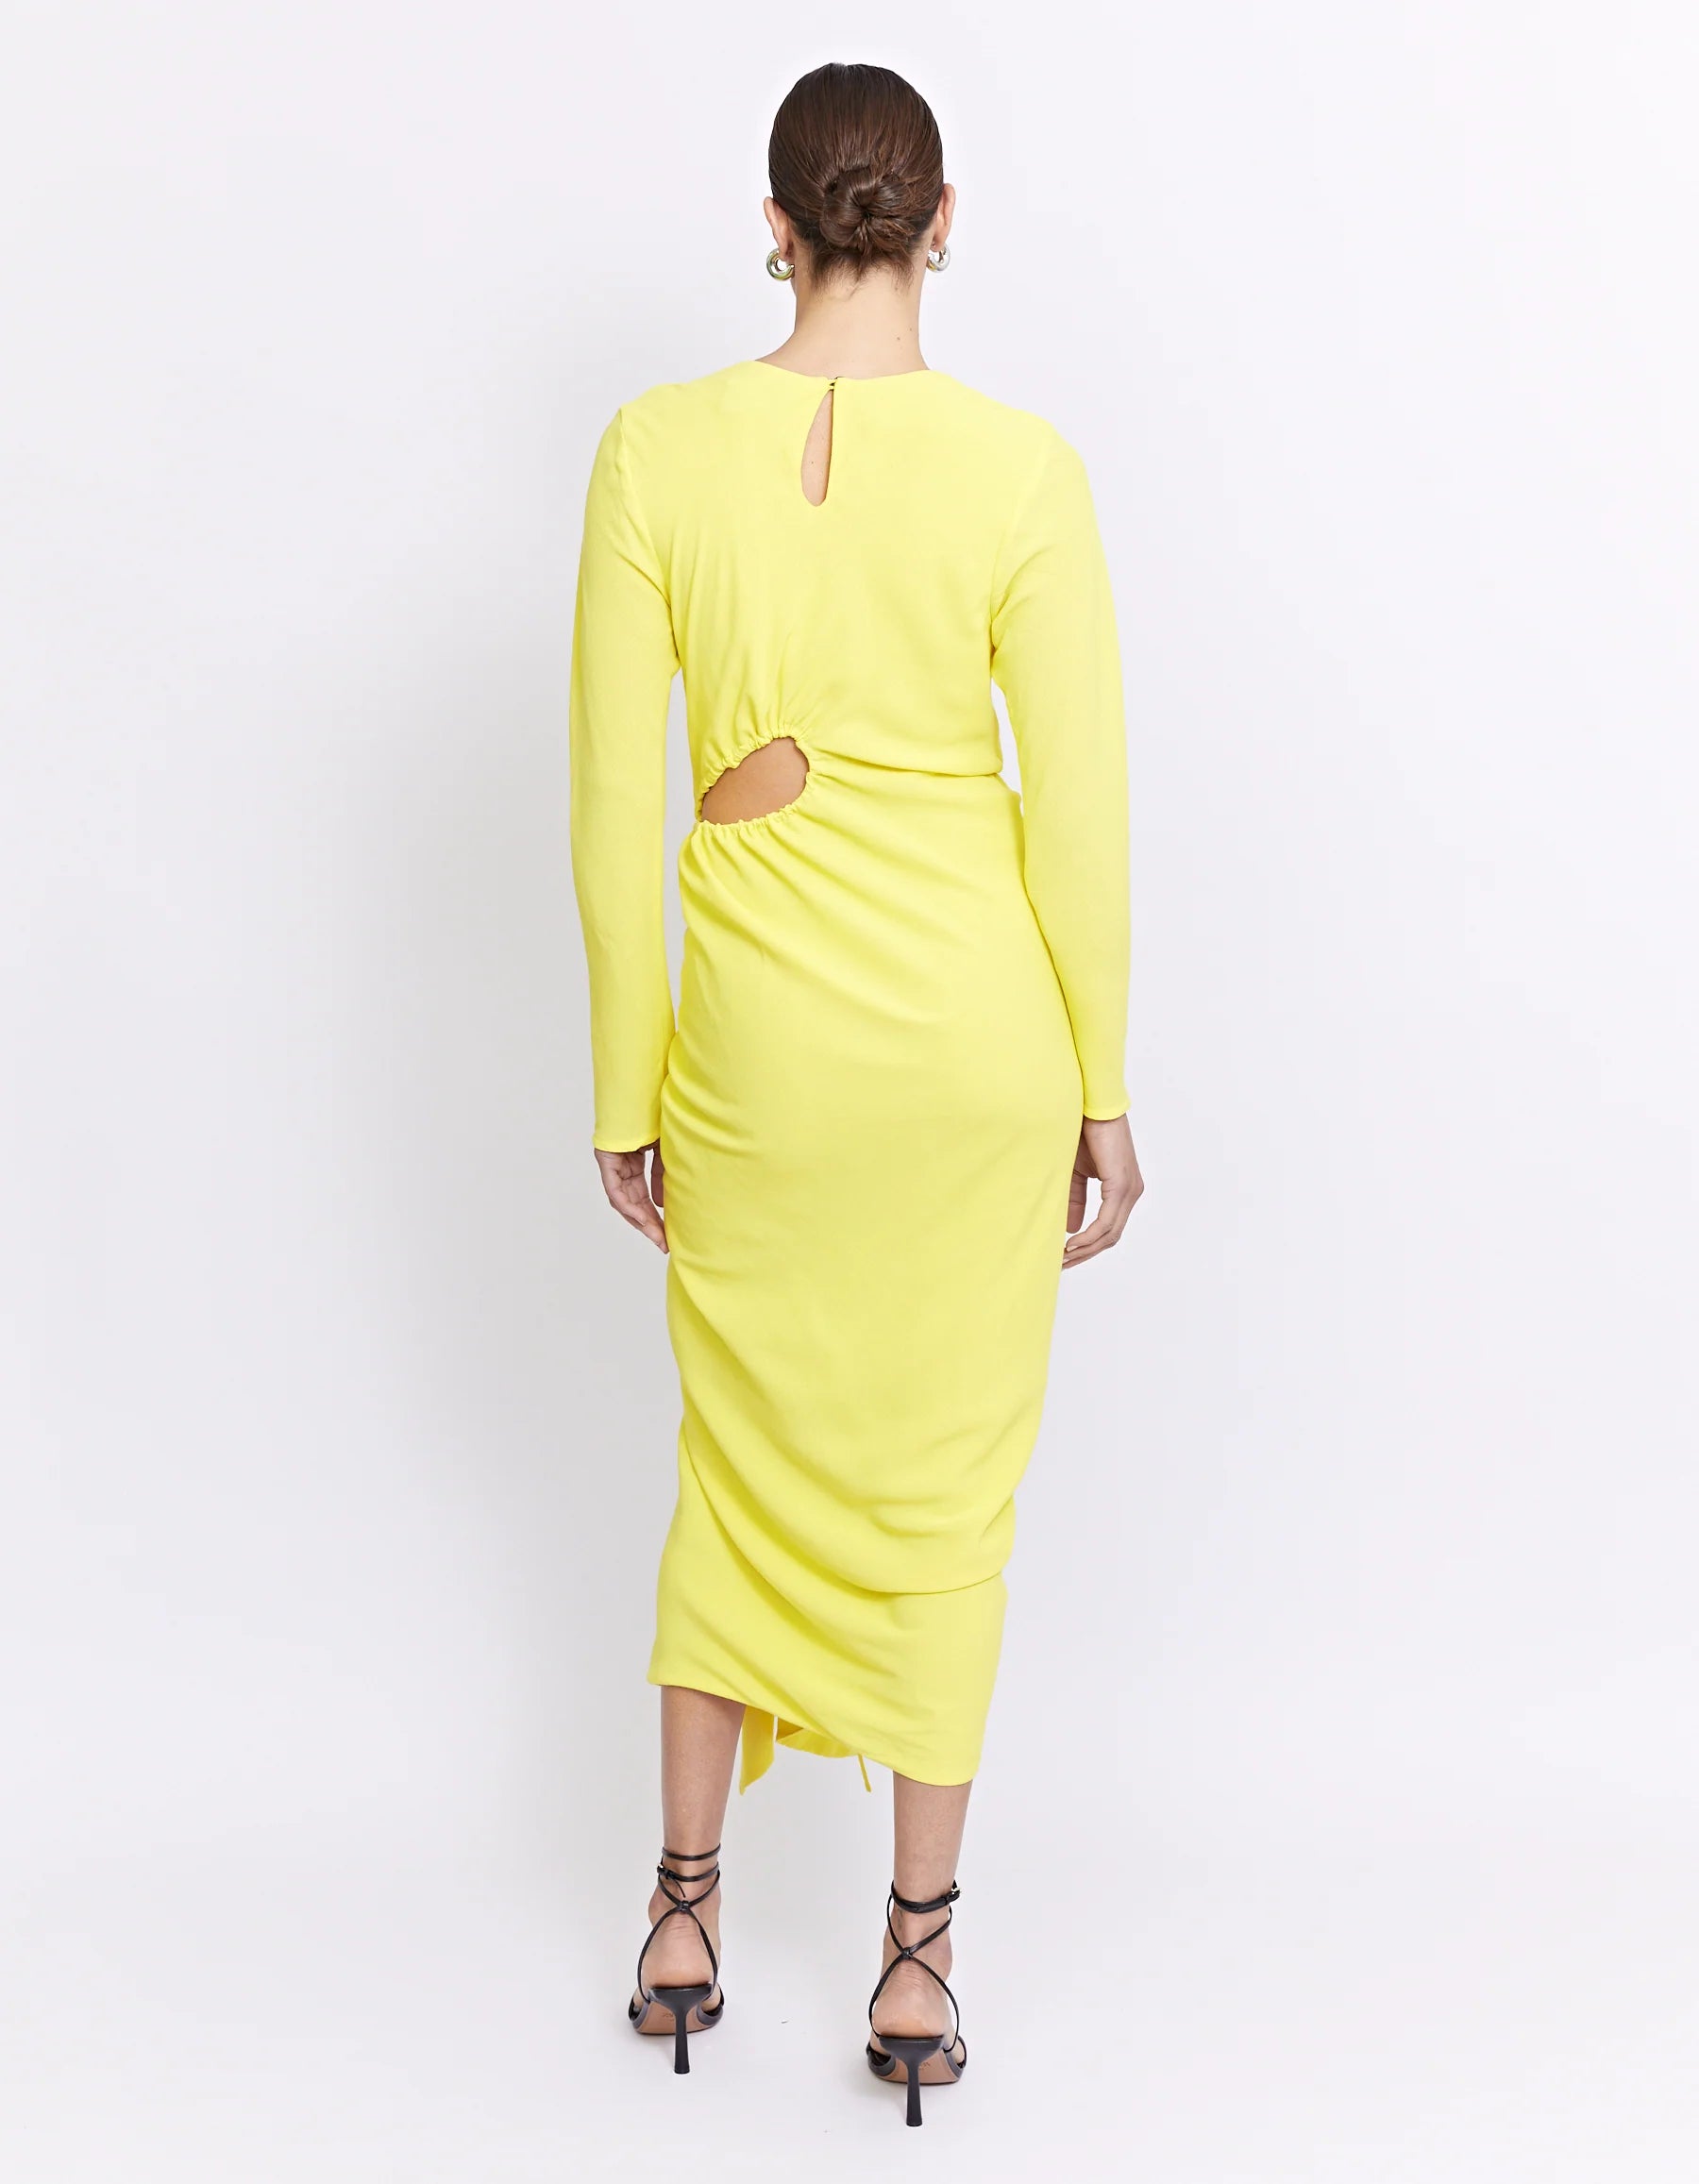 Rowan Dress - Lemon